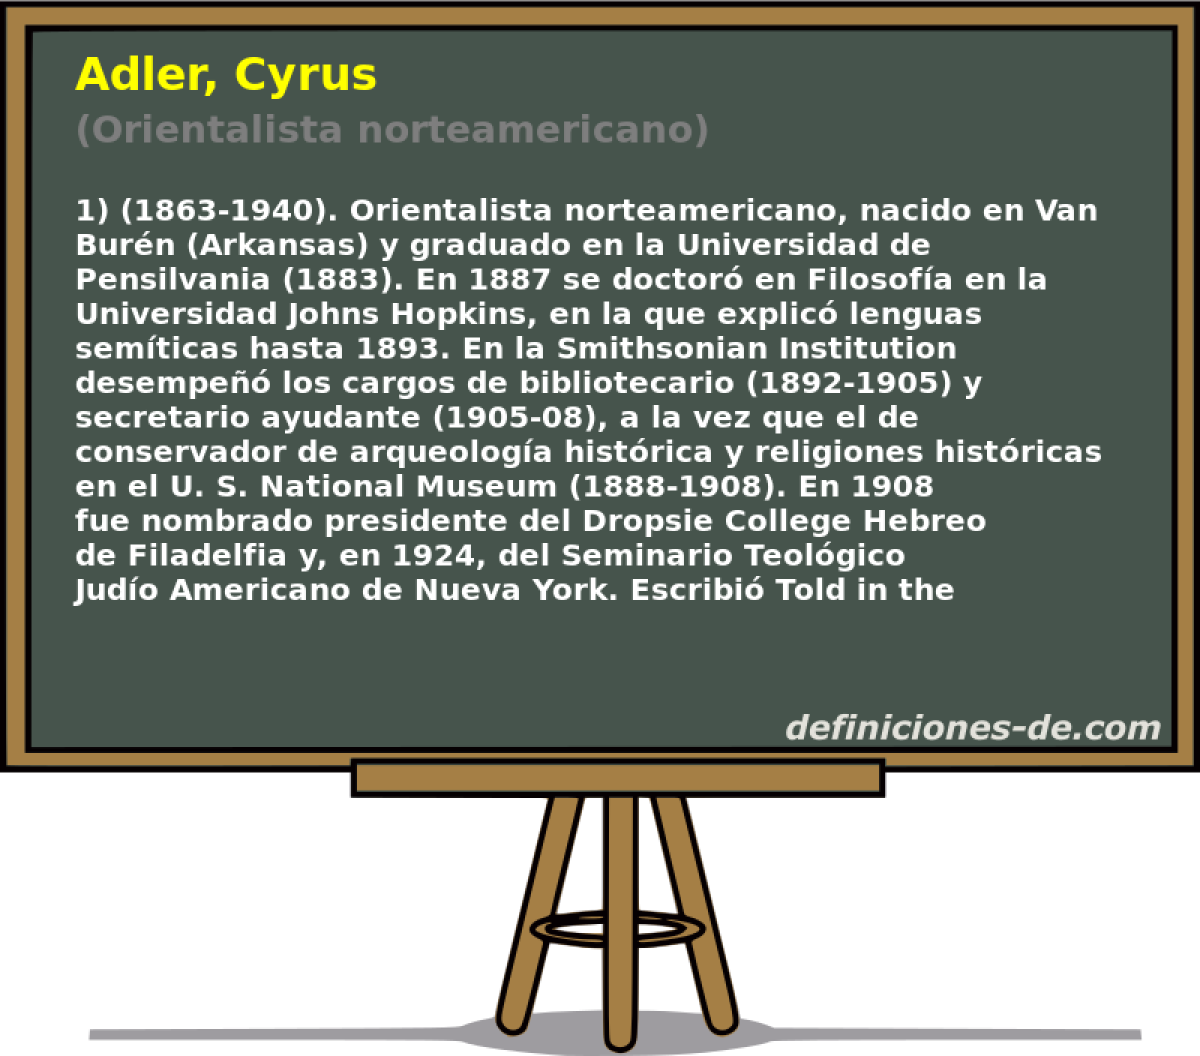 Adler, Cyrus (Orientalista norteamericano)